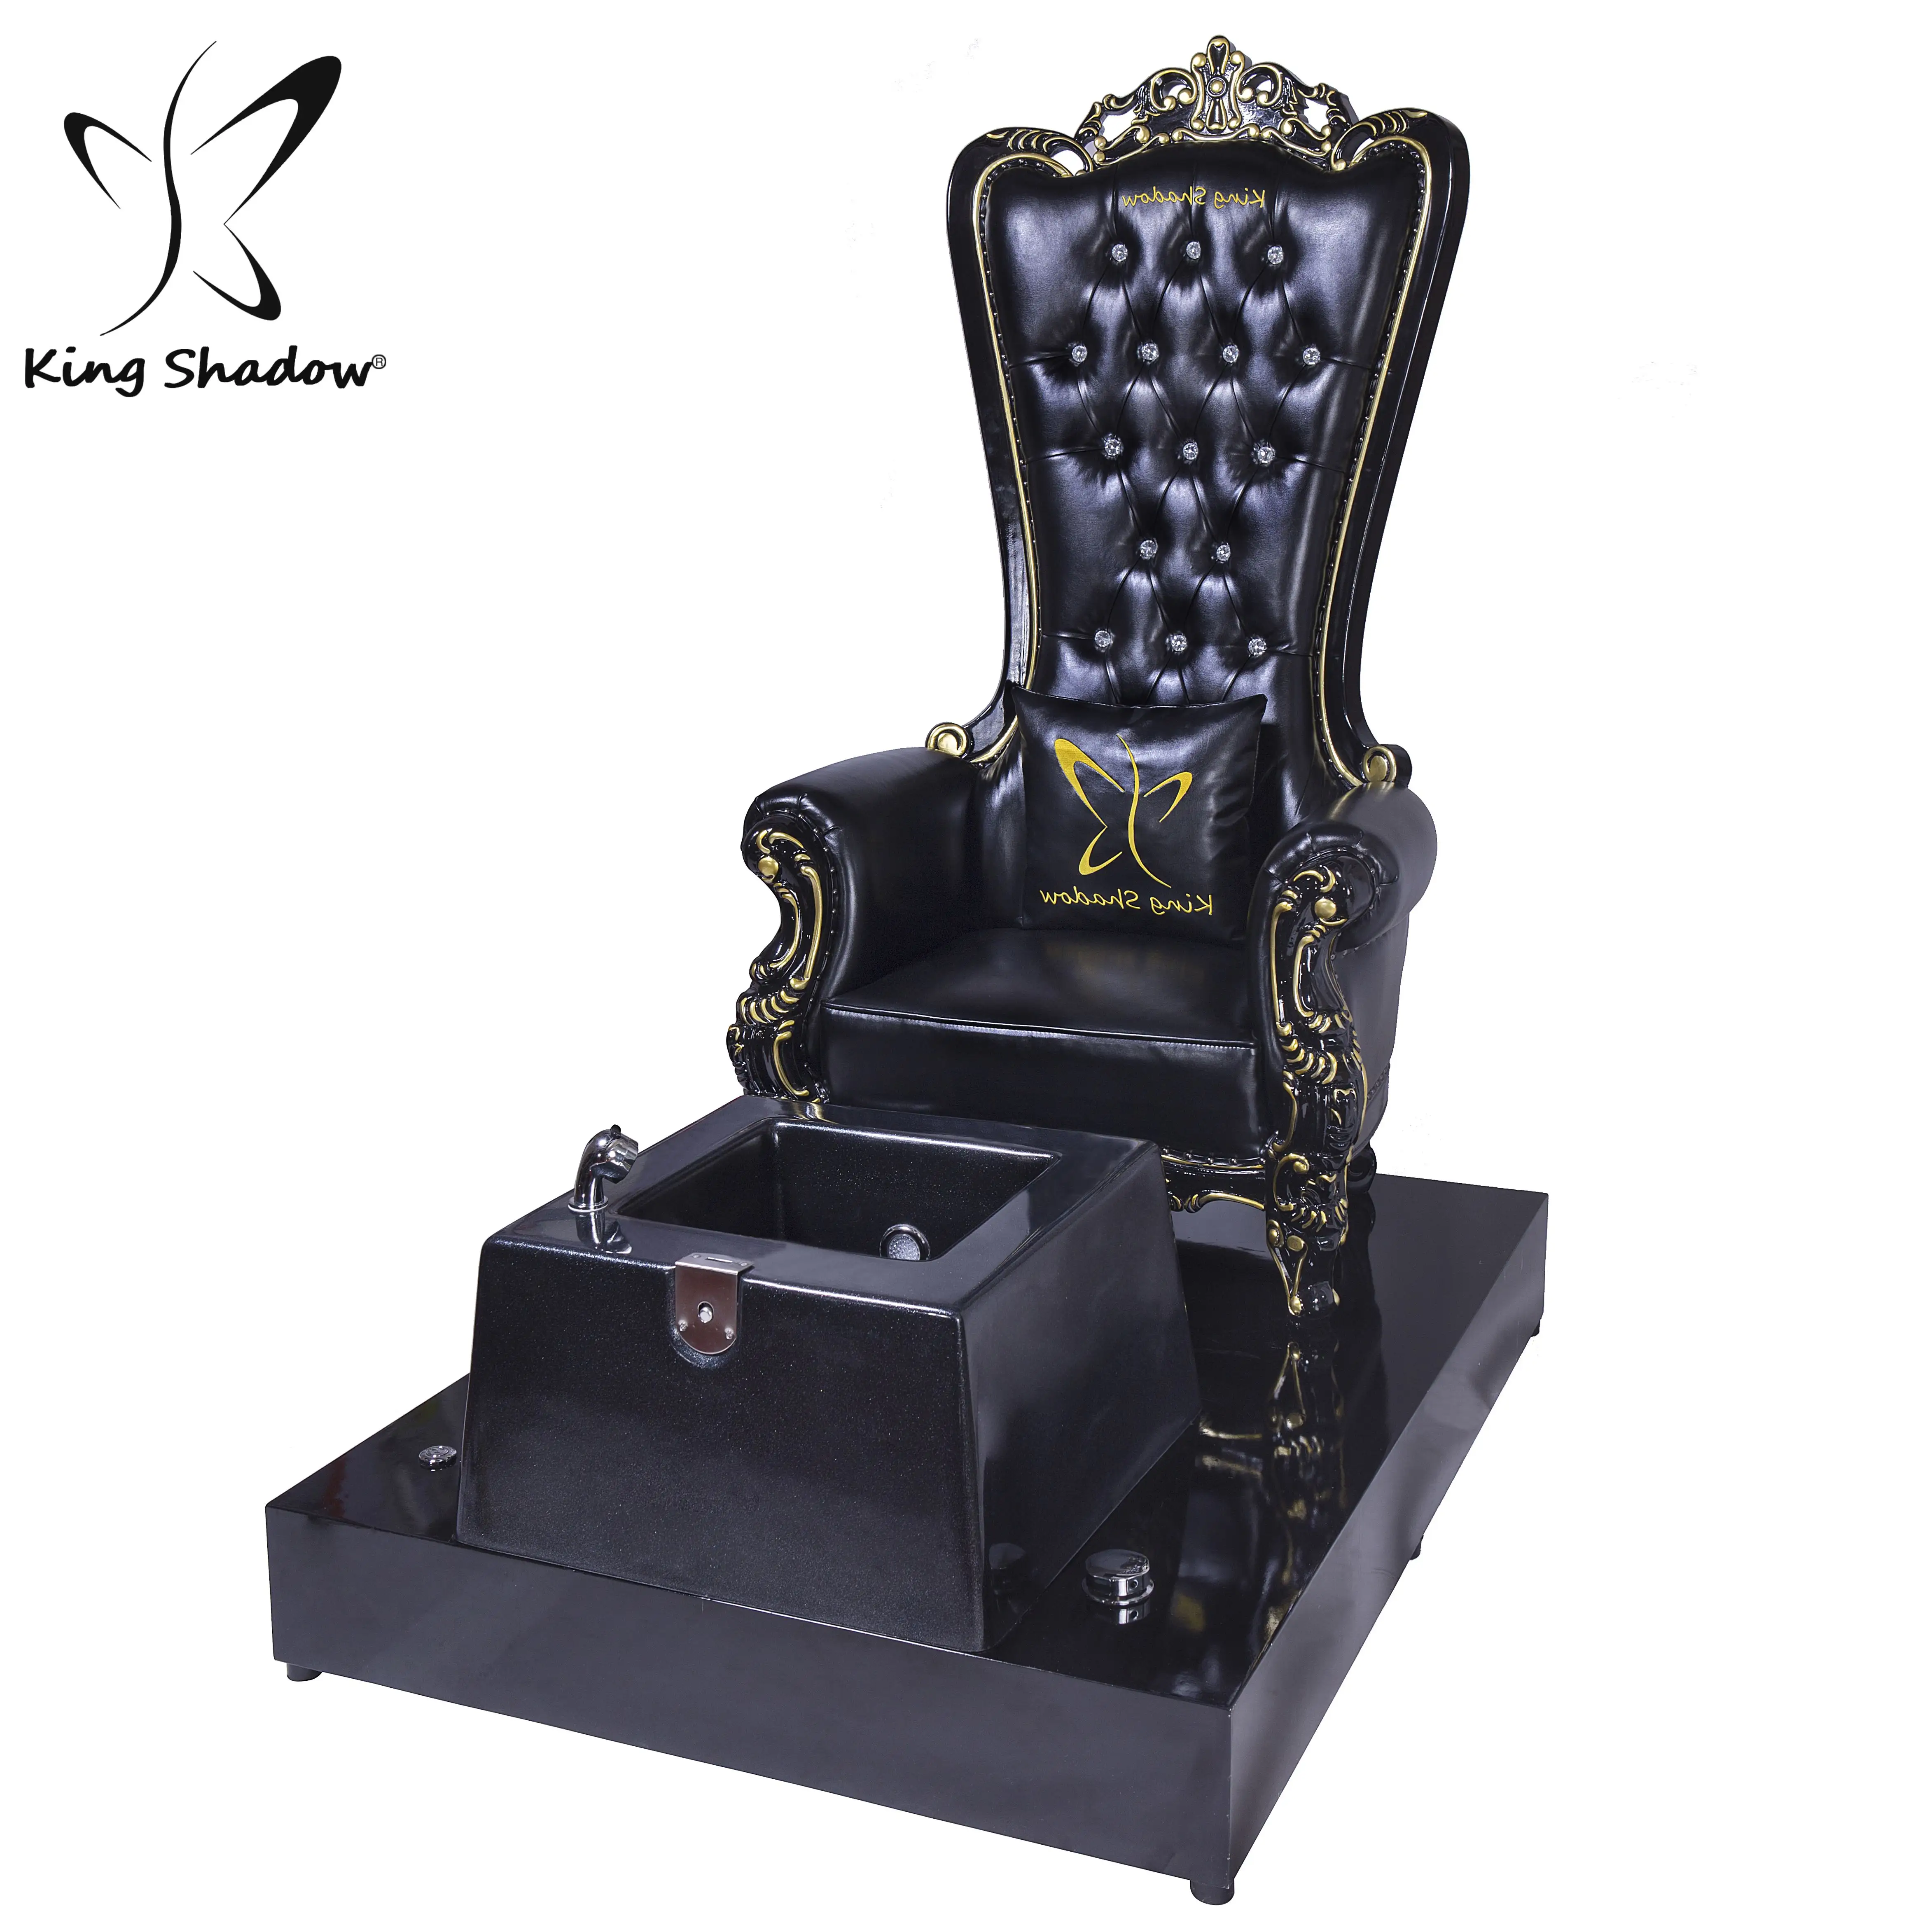 शाही राजा सिंहासन कुर्सी काले पेडीक्योर स्टेशन पैर स्पा पेडीक्योर कुर्सी